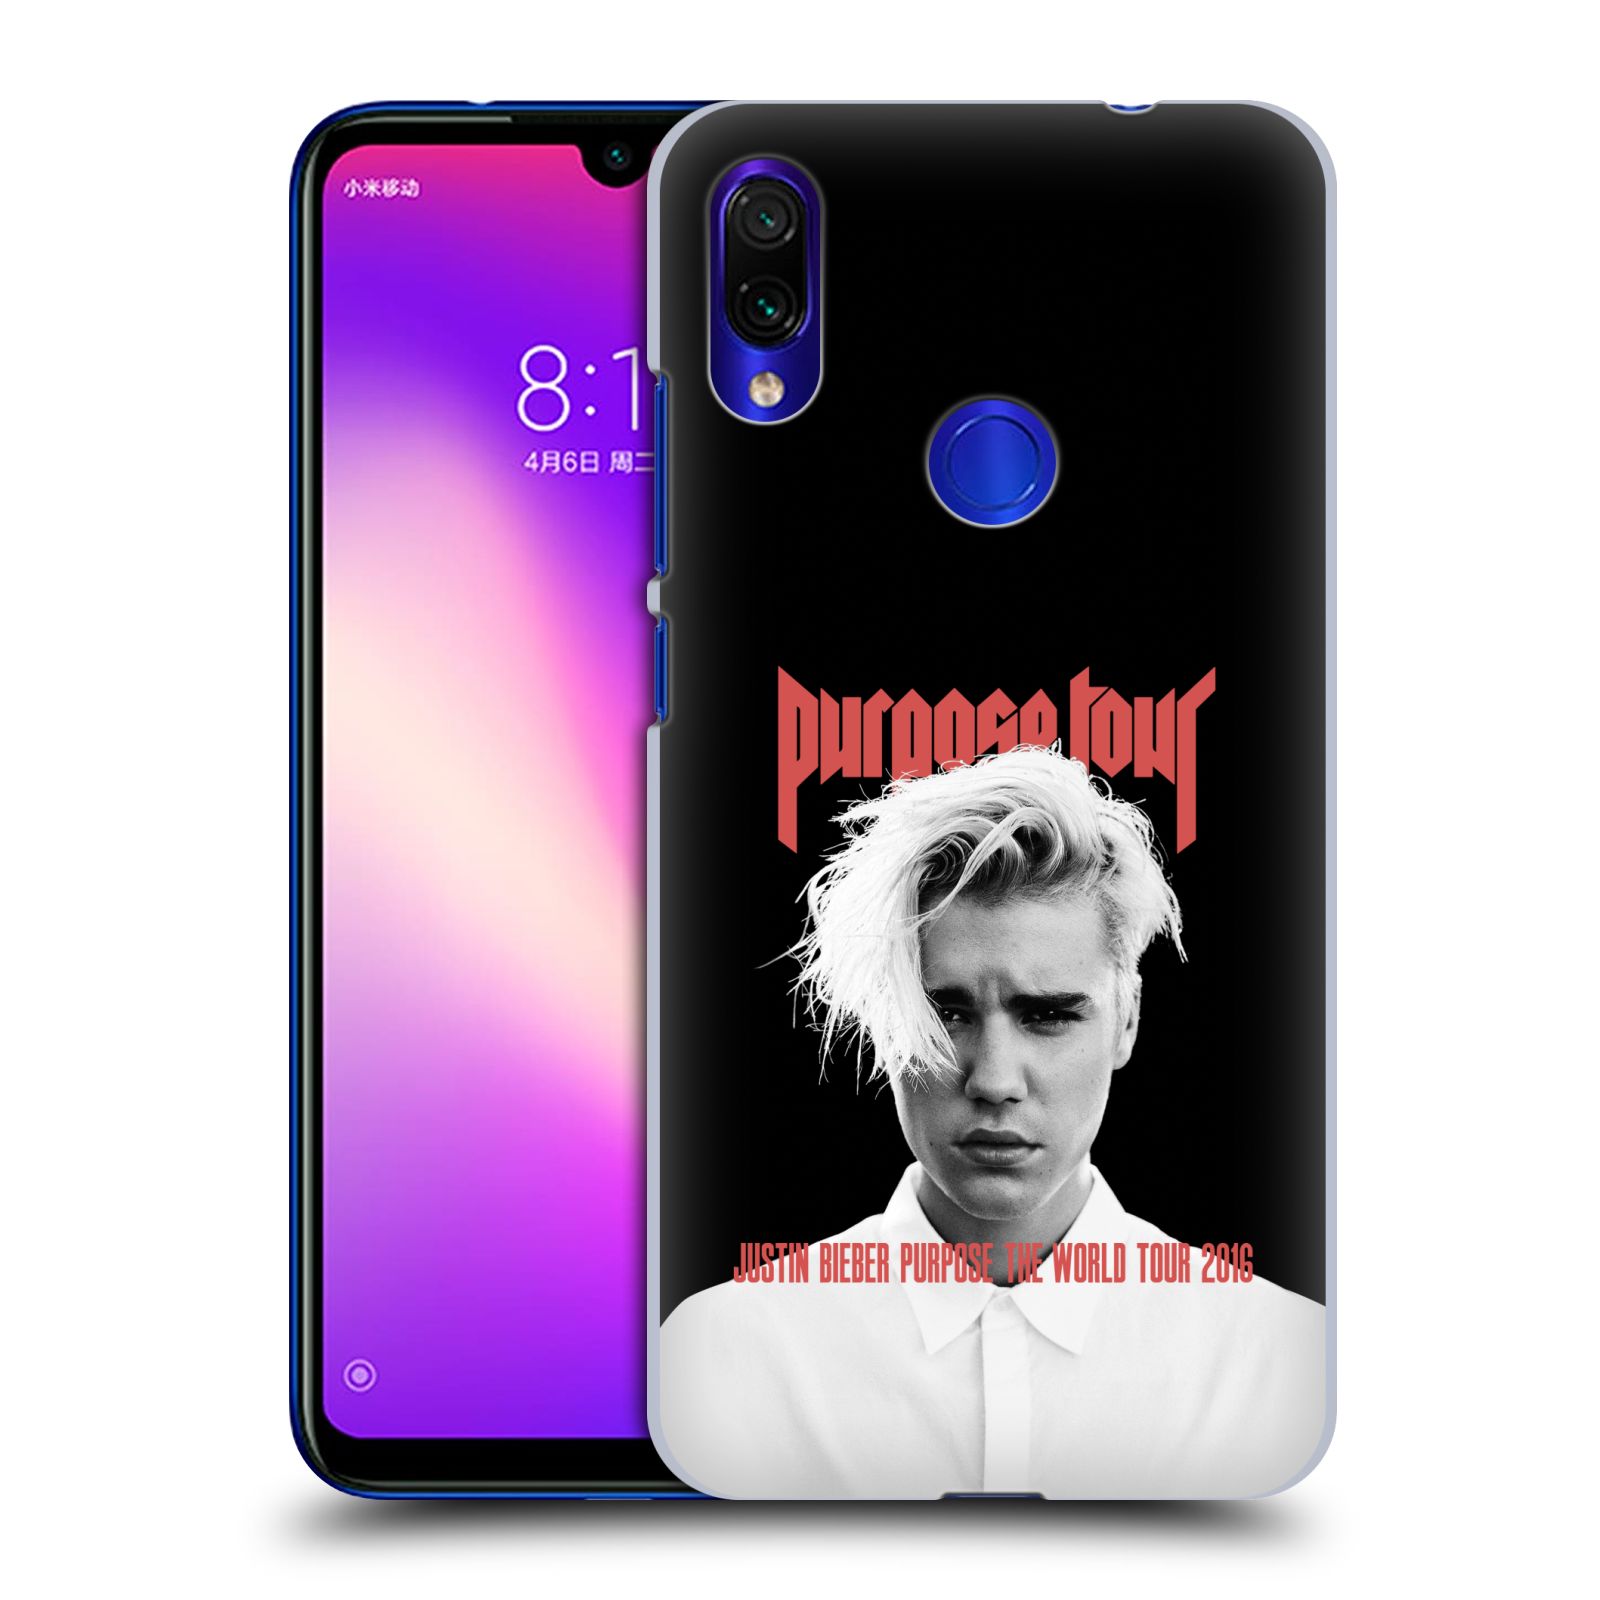 Pouzdro na mobil Xiaomi Redmi Note 7 - Head Case - Justin Bieber foto Purpose tour černé pozadí